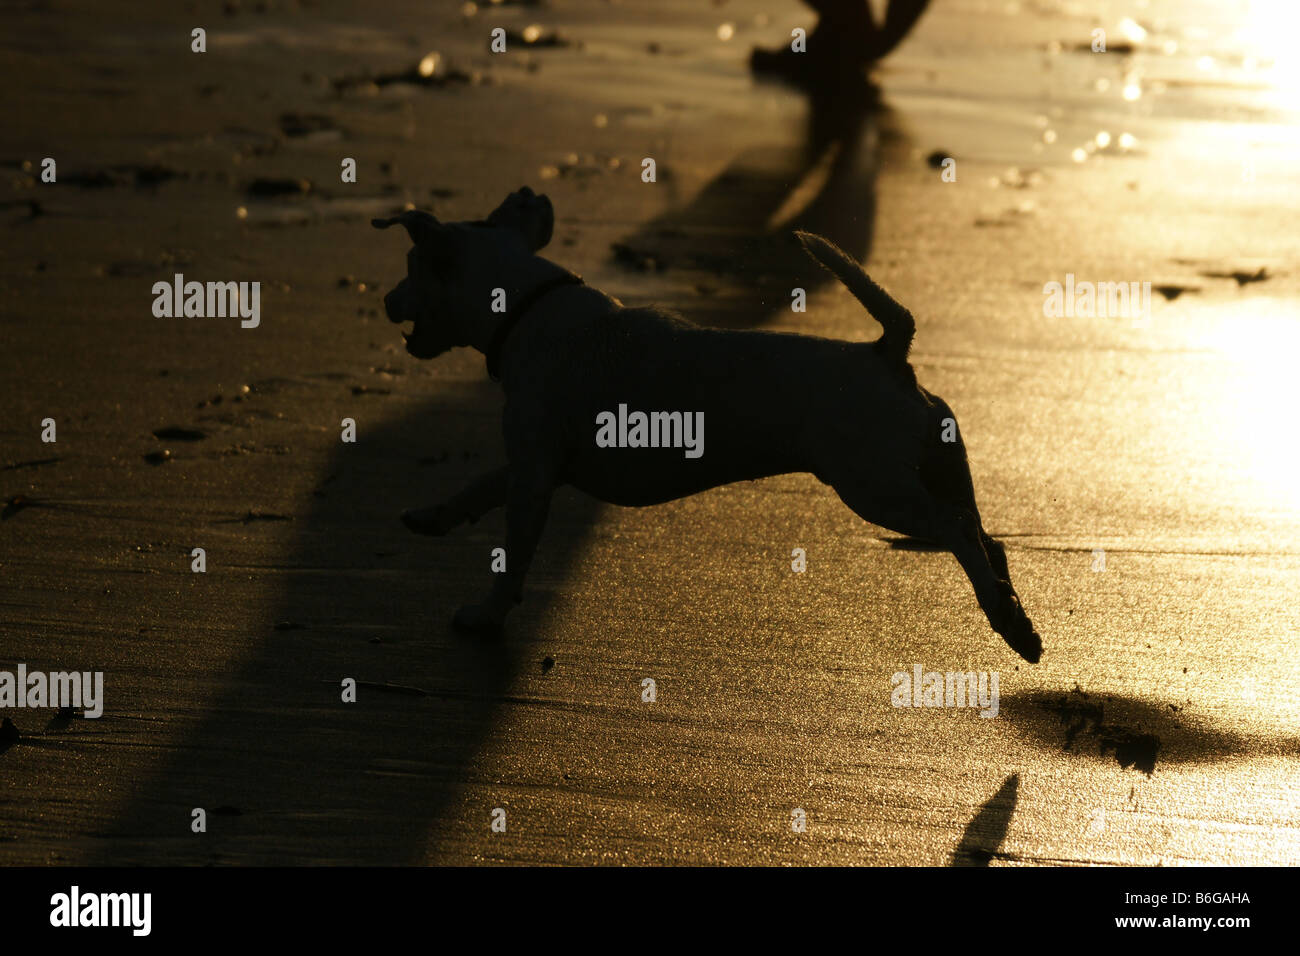 Piccolo Cane silhouette a piedi giocando in funzione uomo a mare di sabbia spiaggia fuoriuscite di acqua in onda luce arancione Foto Stock